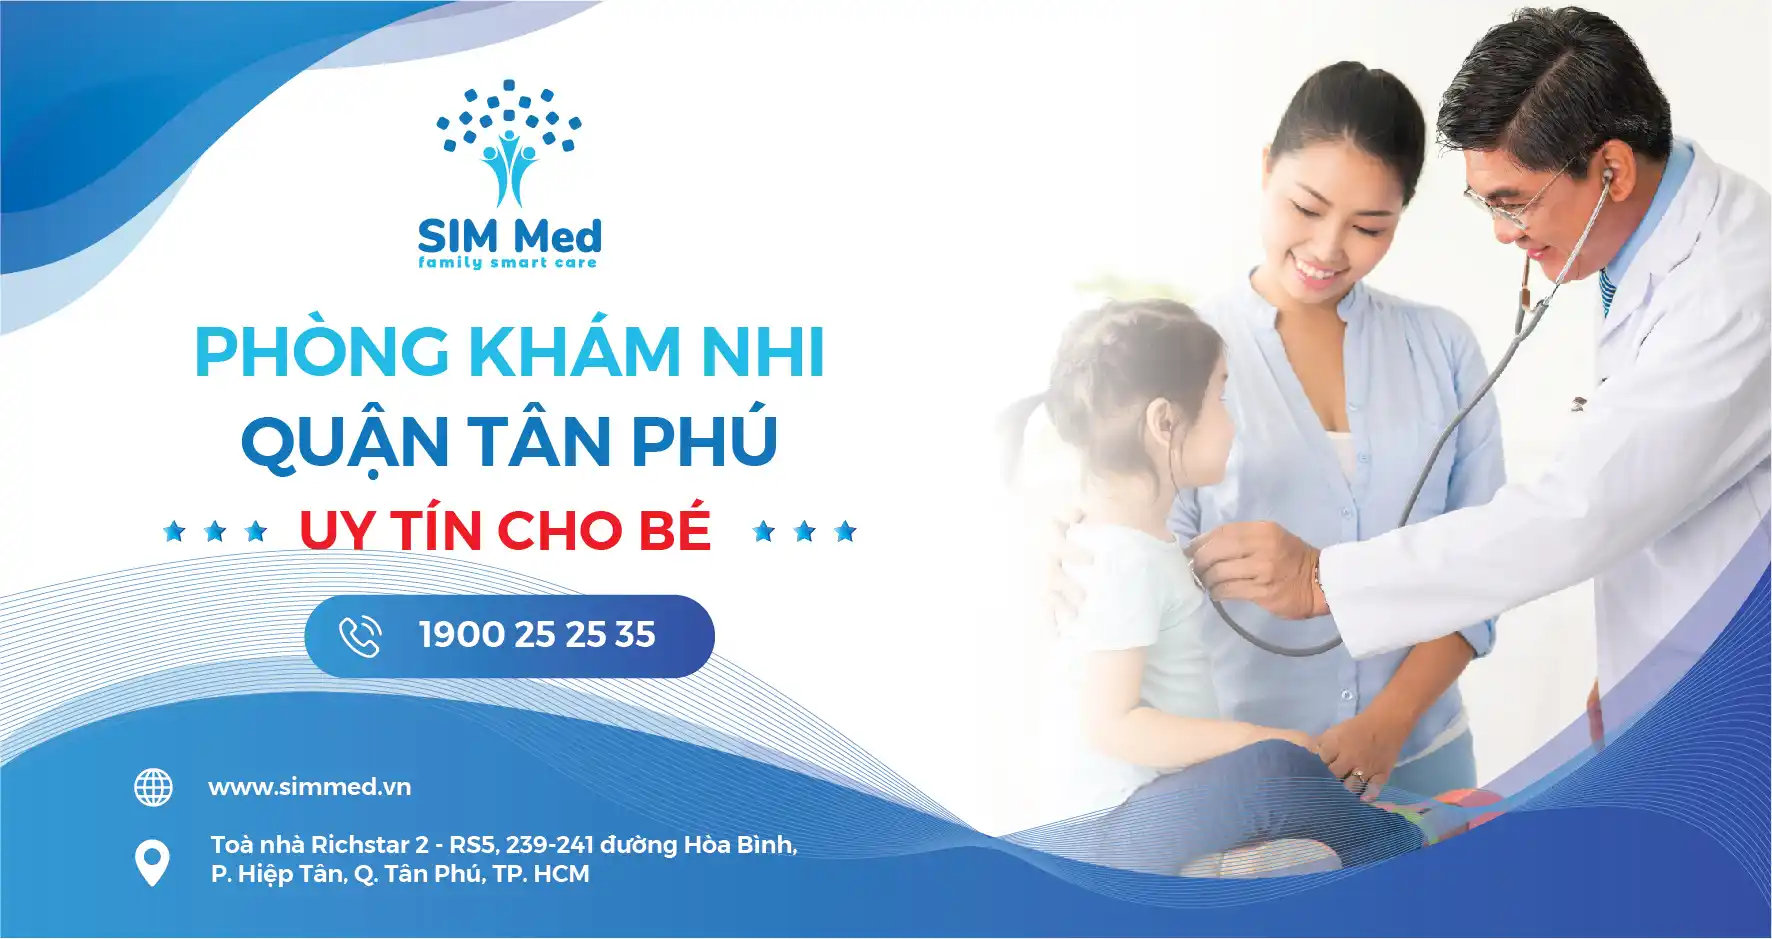 Phòng khám nhi quận Tân Phú uy tín cho bé - SIM MED